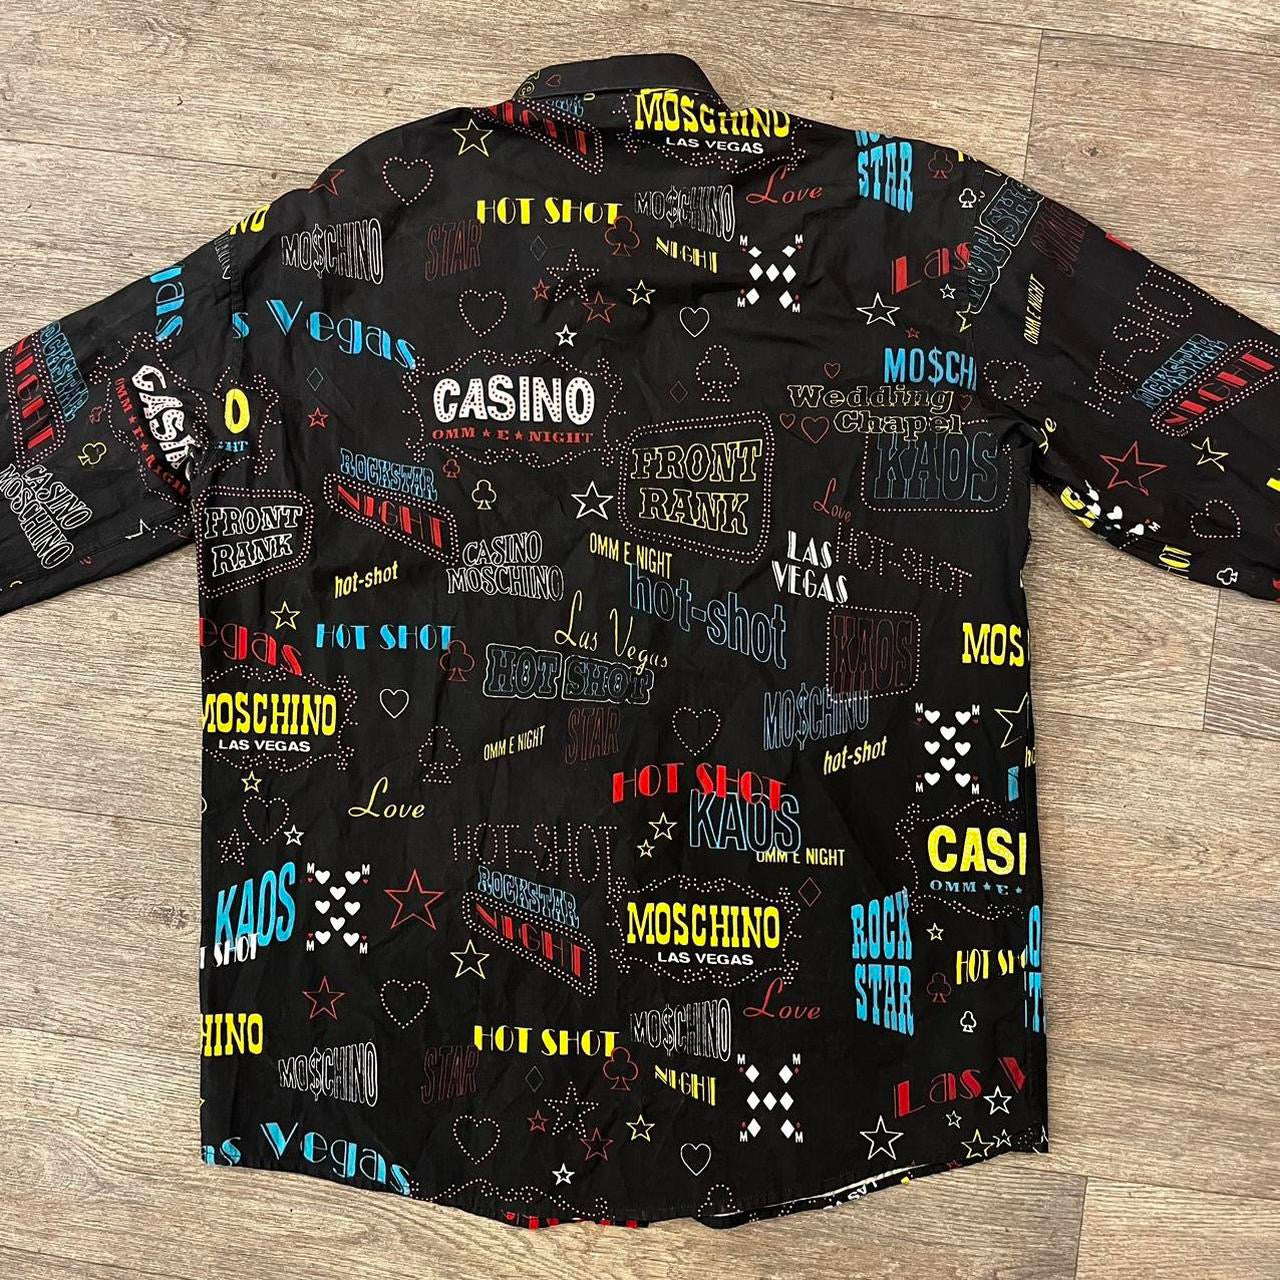 Moschino casino shirt (L)